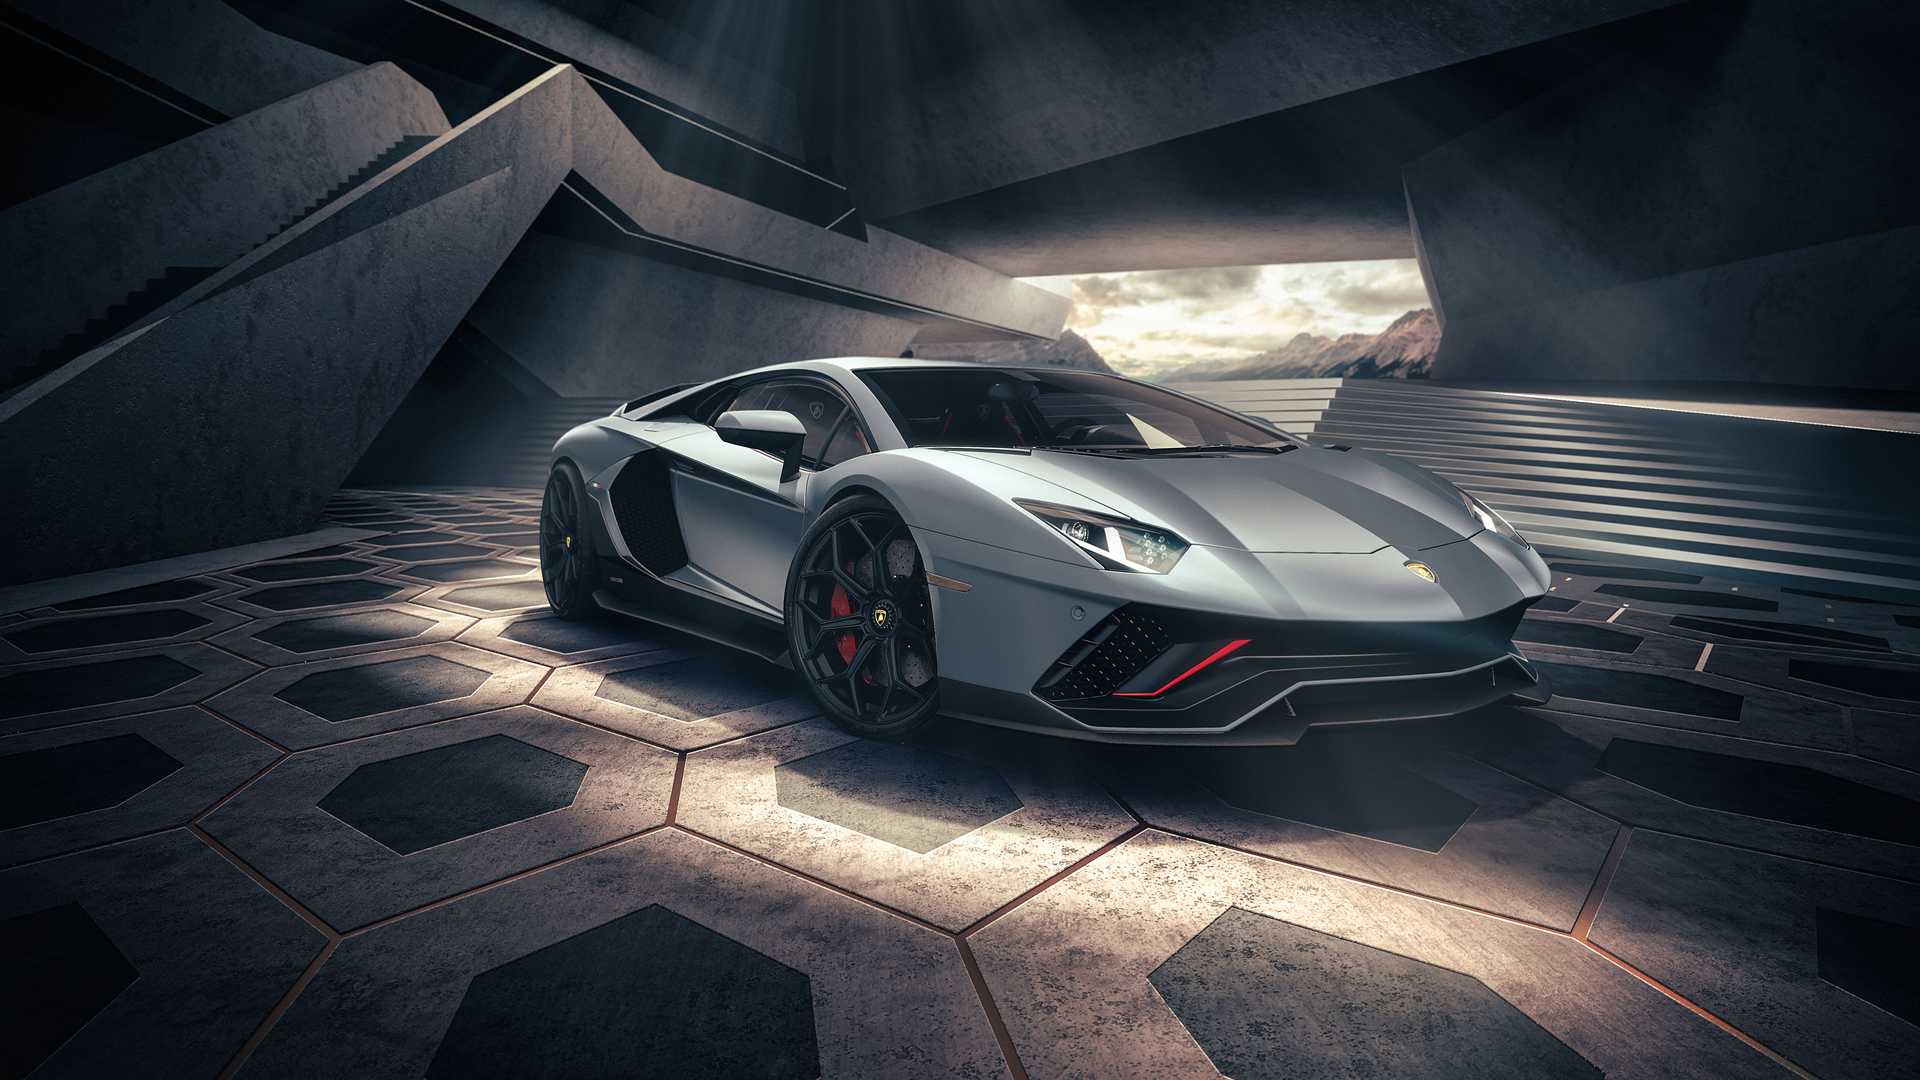 Chiếc xe siêu sang Lamborghini luôn là biểu tượng của sự giàu có và đẳng cấp. Hãy xem những hình ảnh này và cảm nhận sức mạnh và tốc độ của xe này!